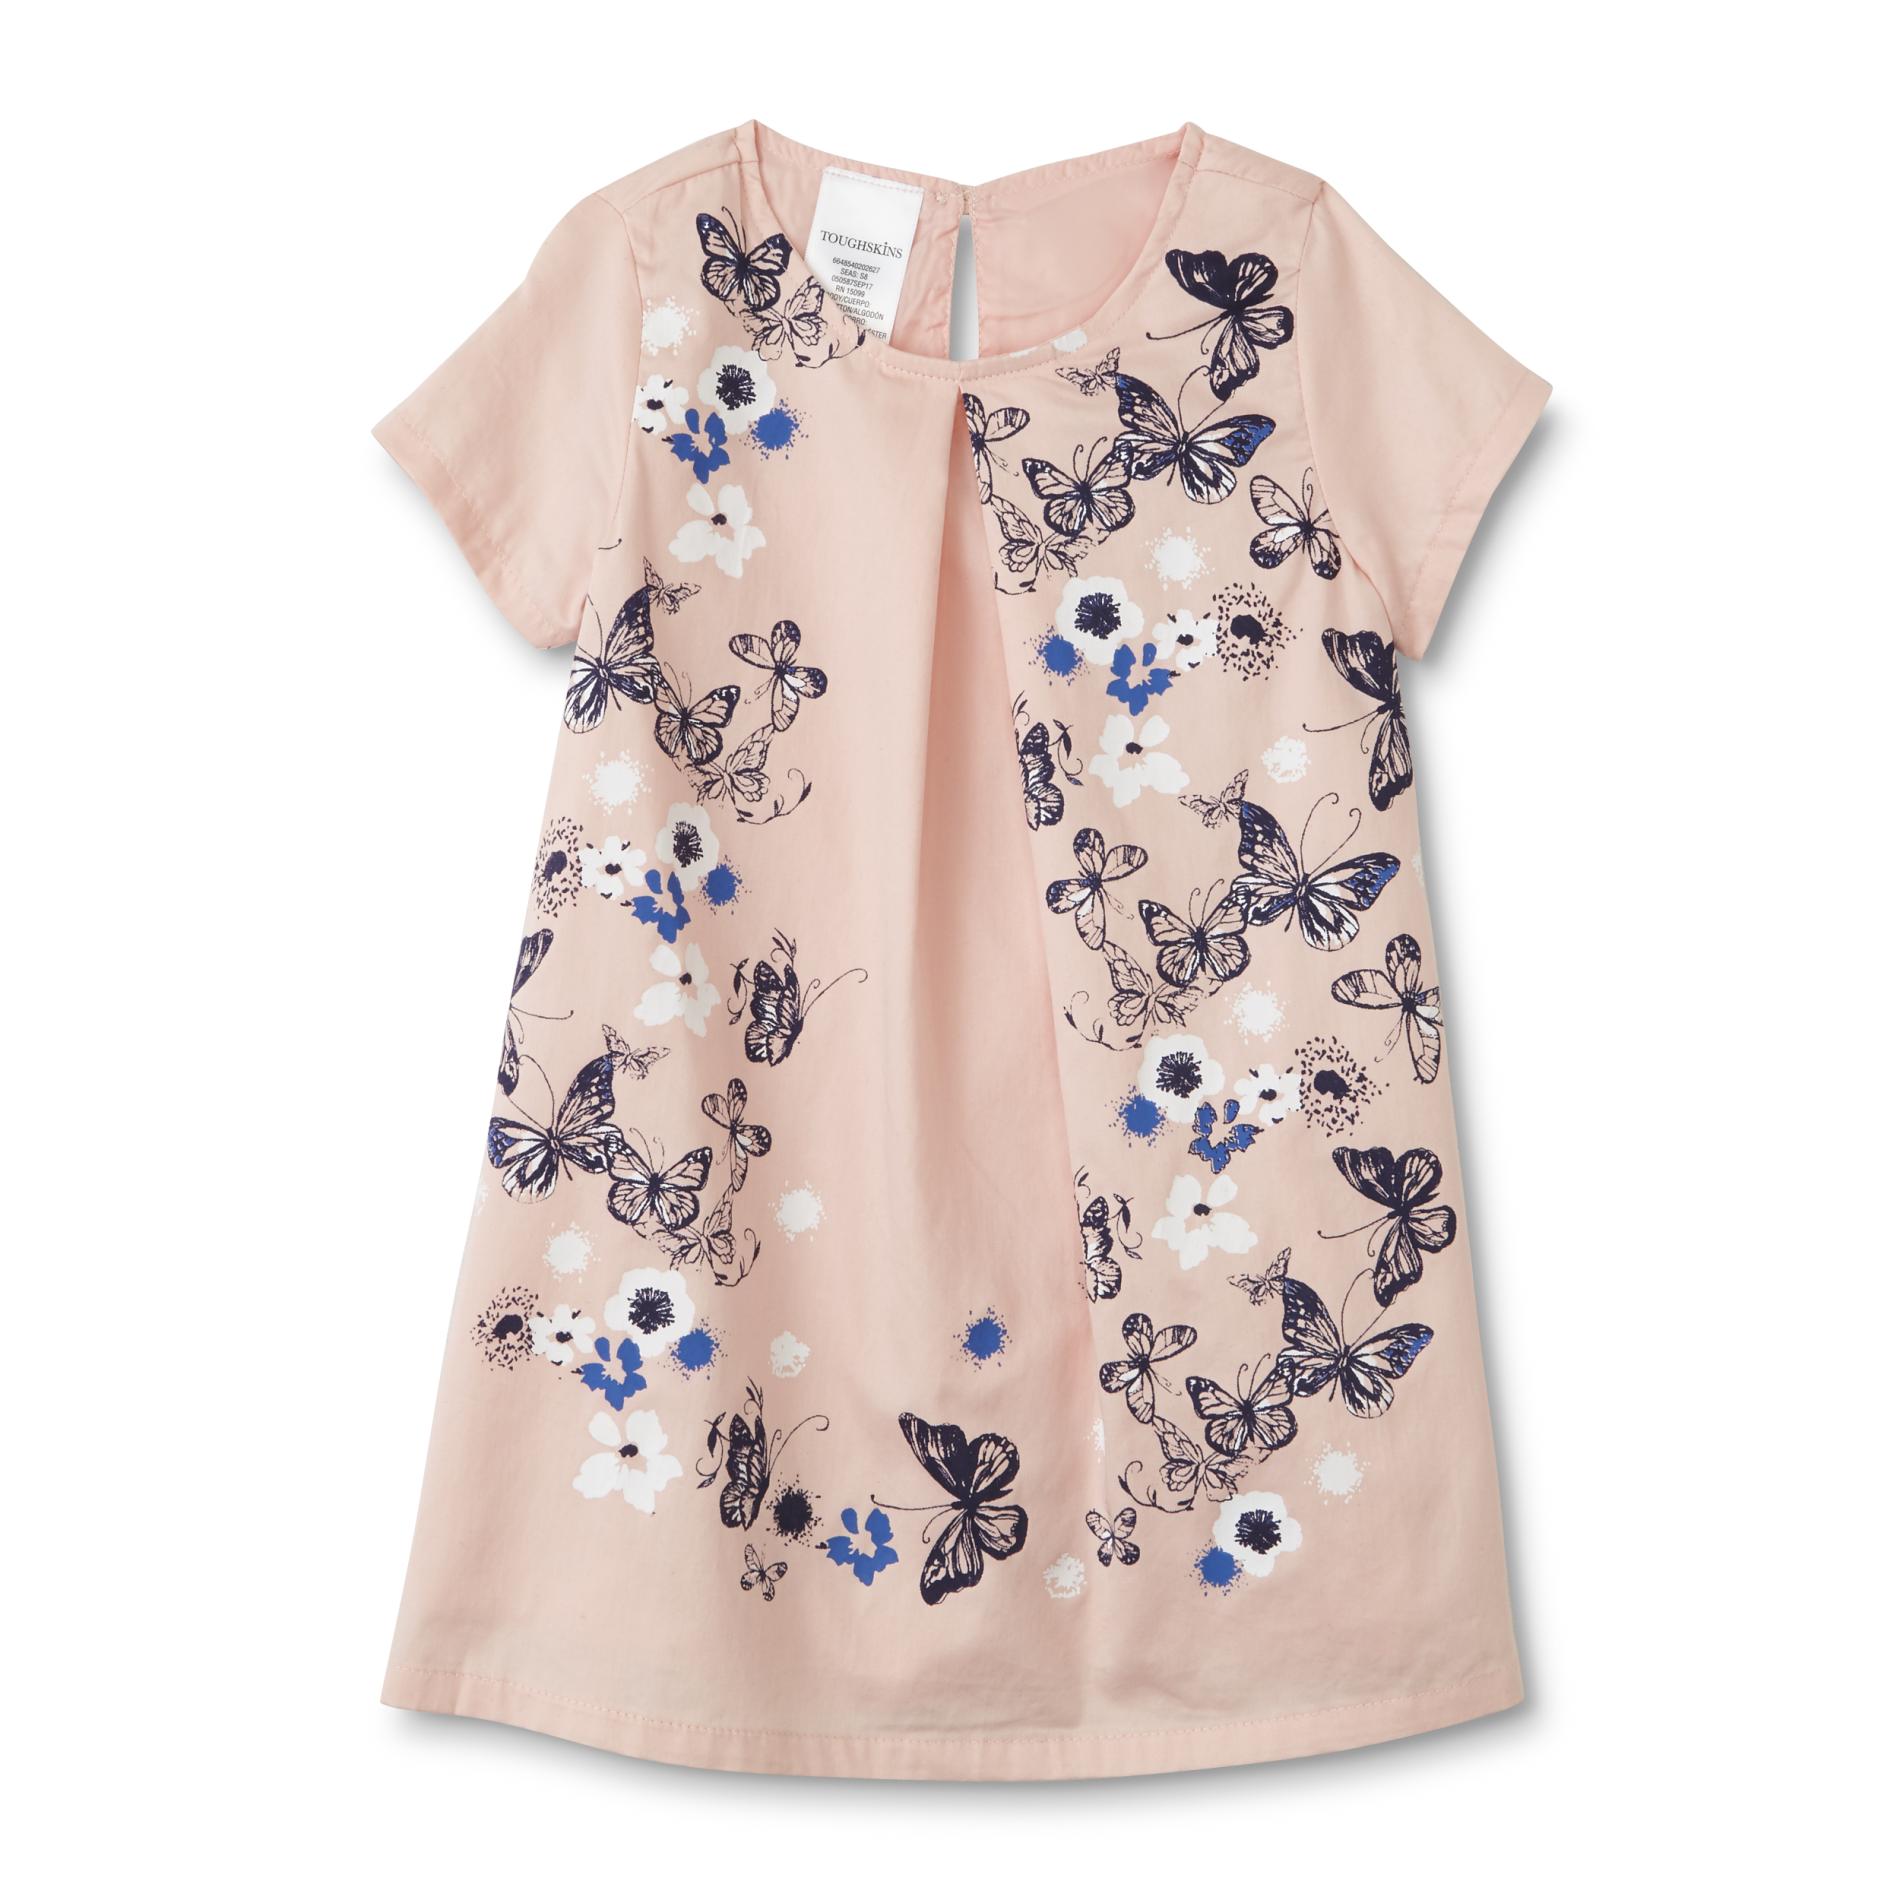 Toughskins Girls' Shirt Dress - Floral Butterfly